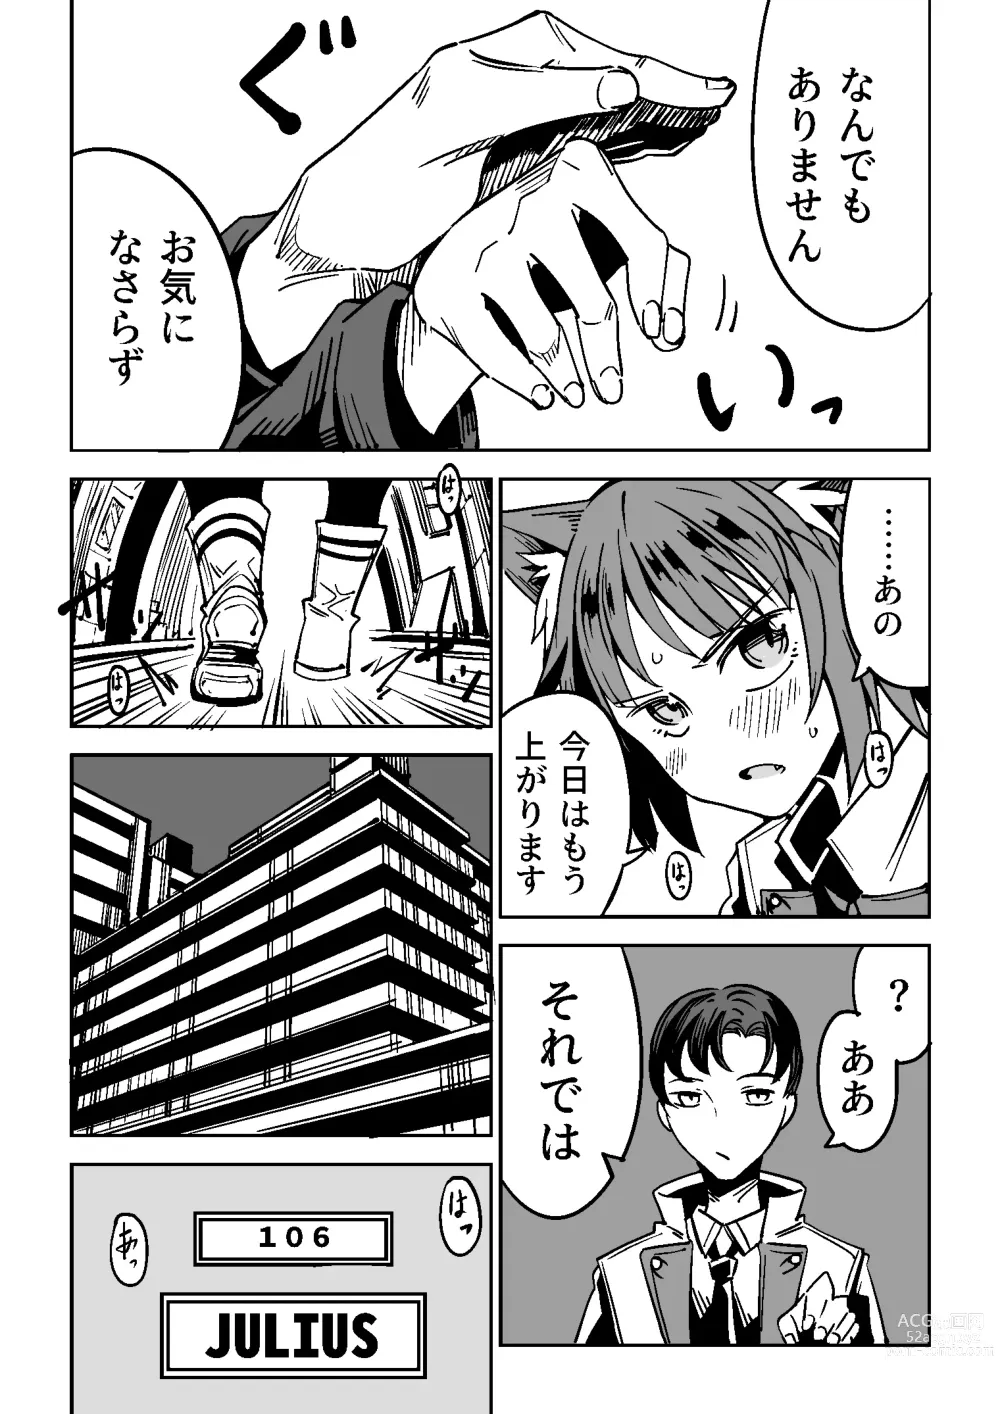 Page 6 of doujinshi NOID Episode:Julius